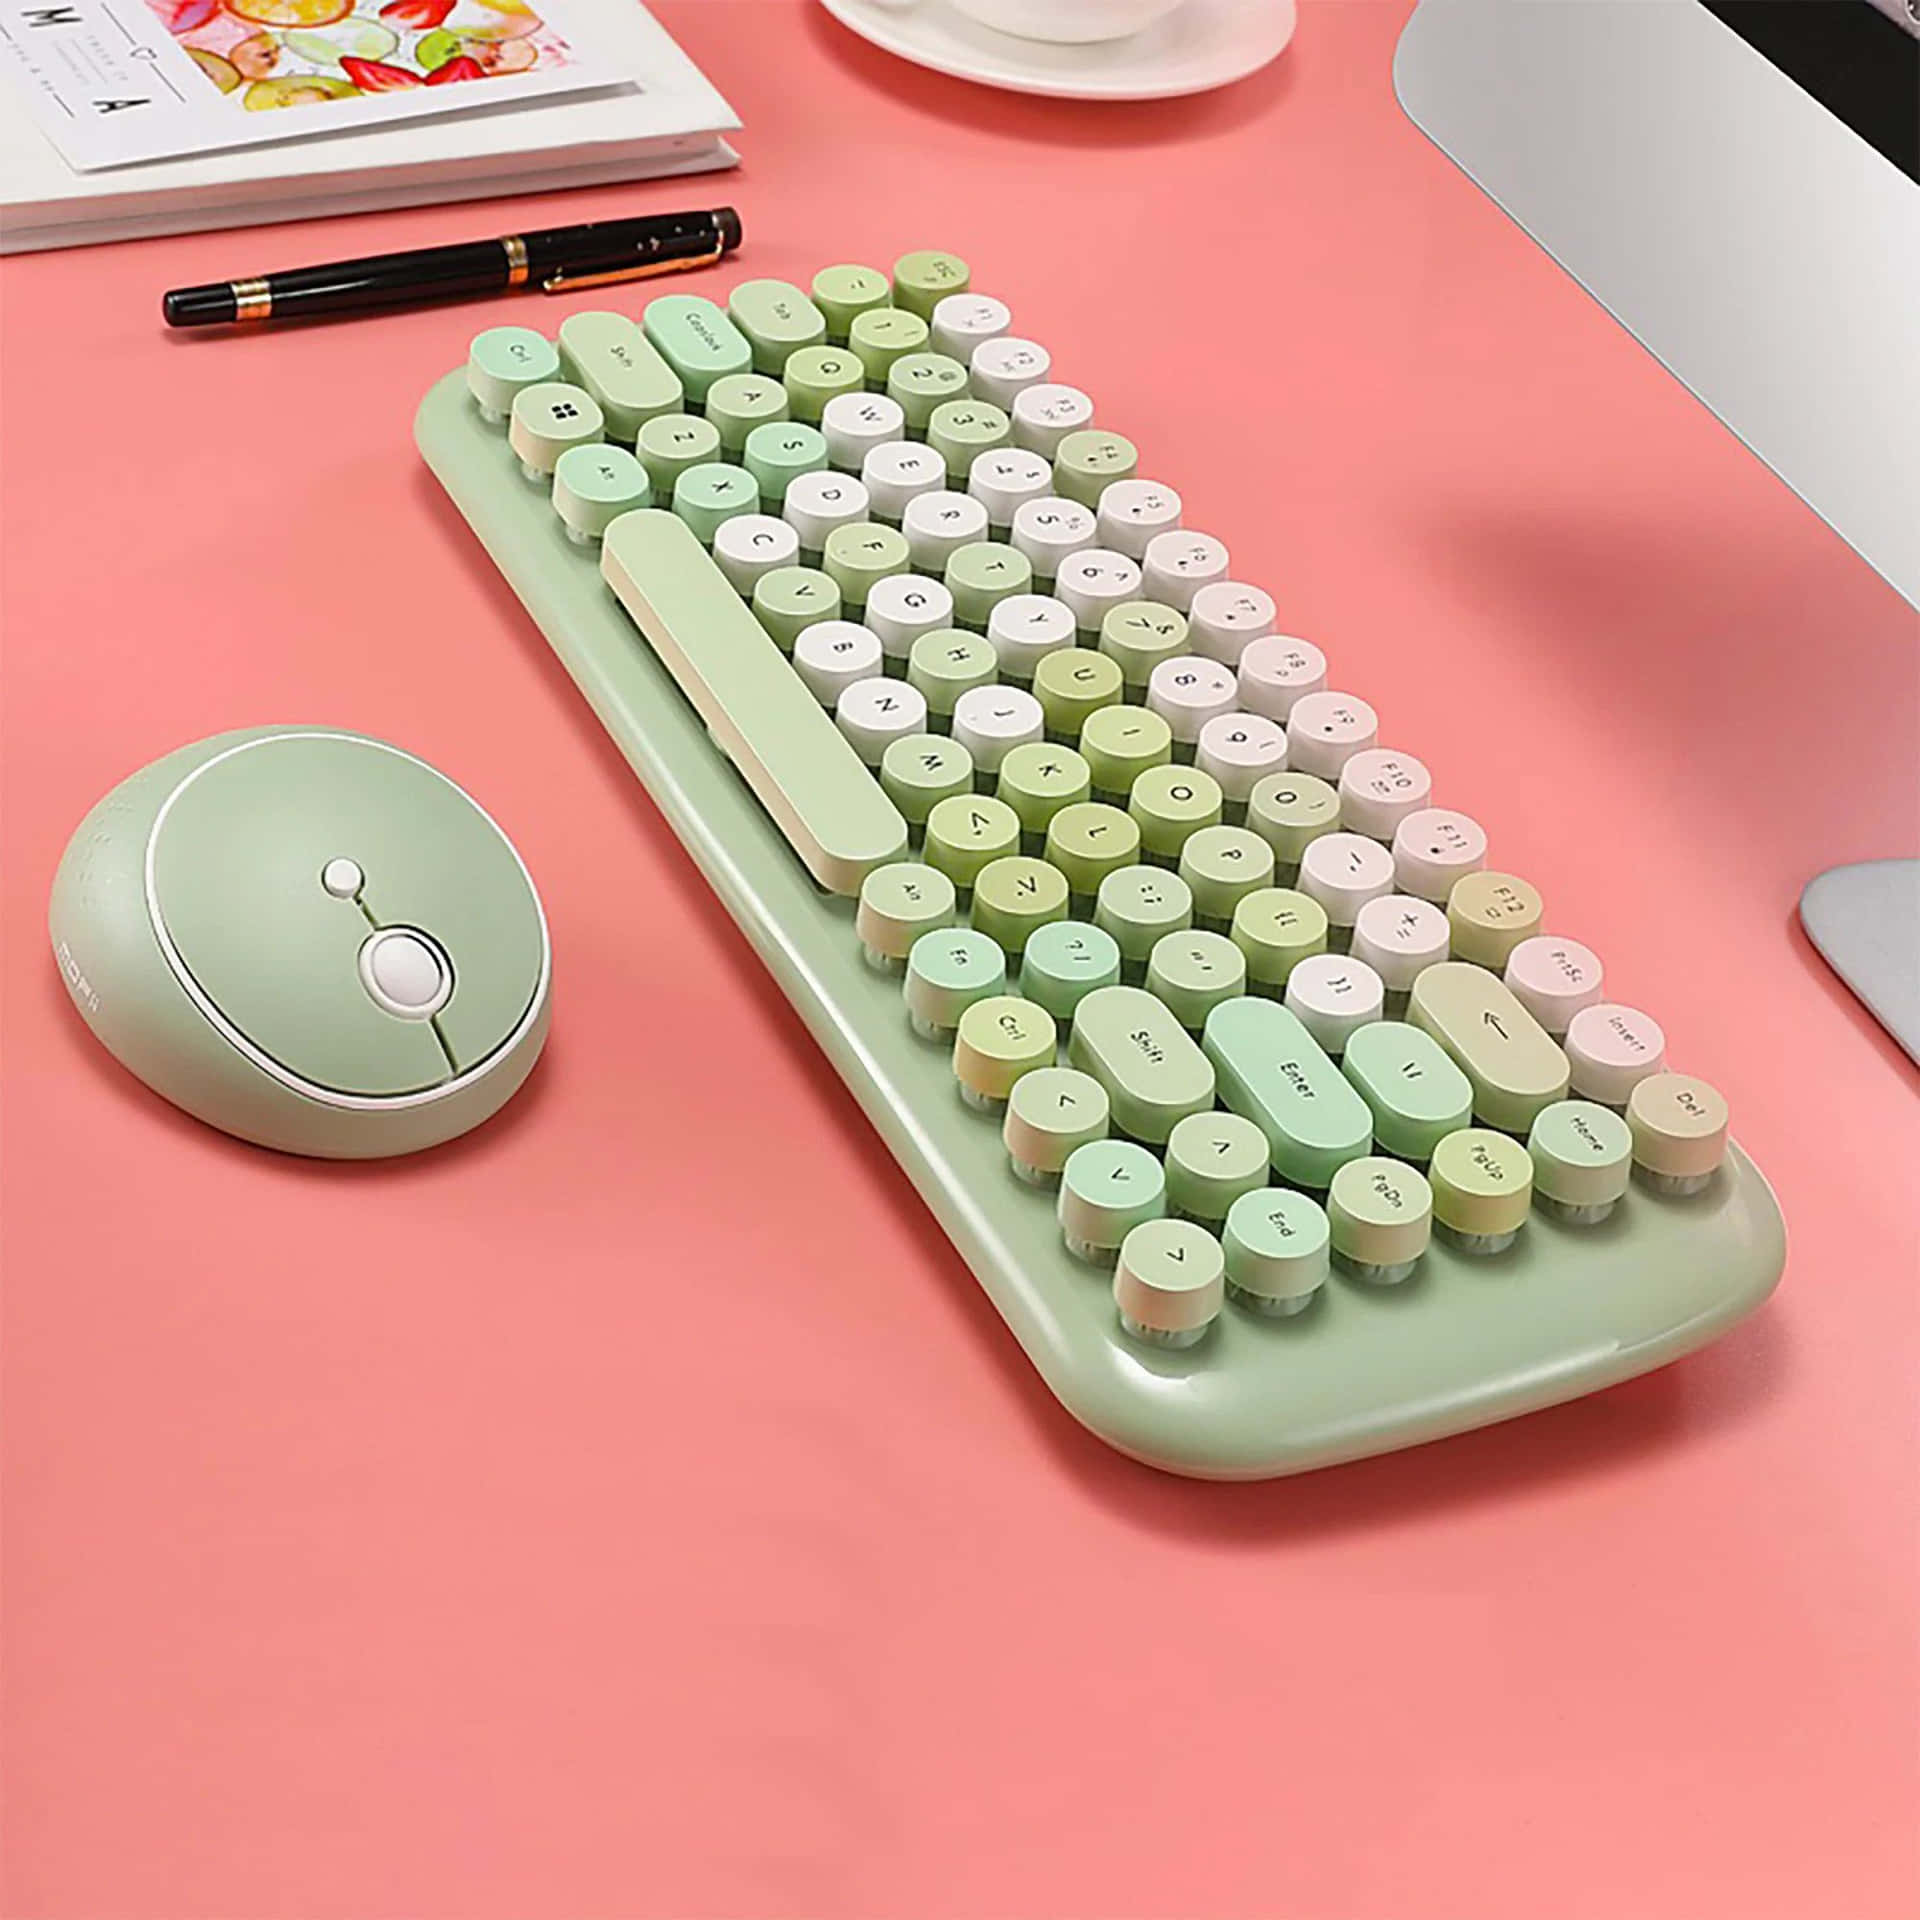 Einegrüne Tastatur Und Eine Maus Auf Einem Rosa Schreibtisch.